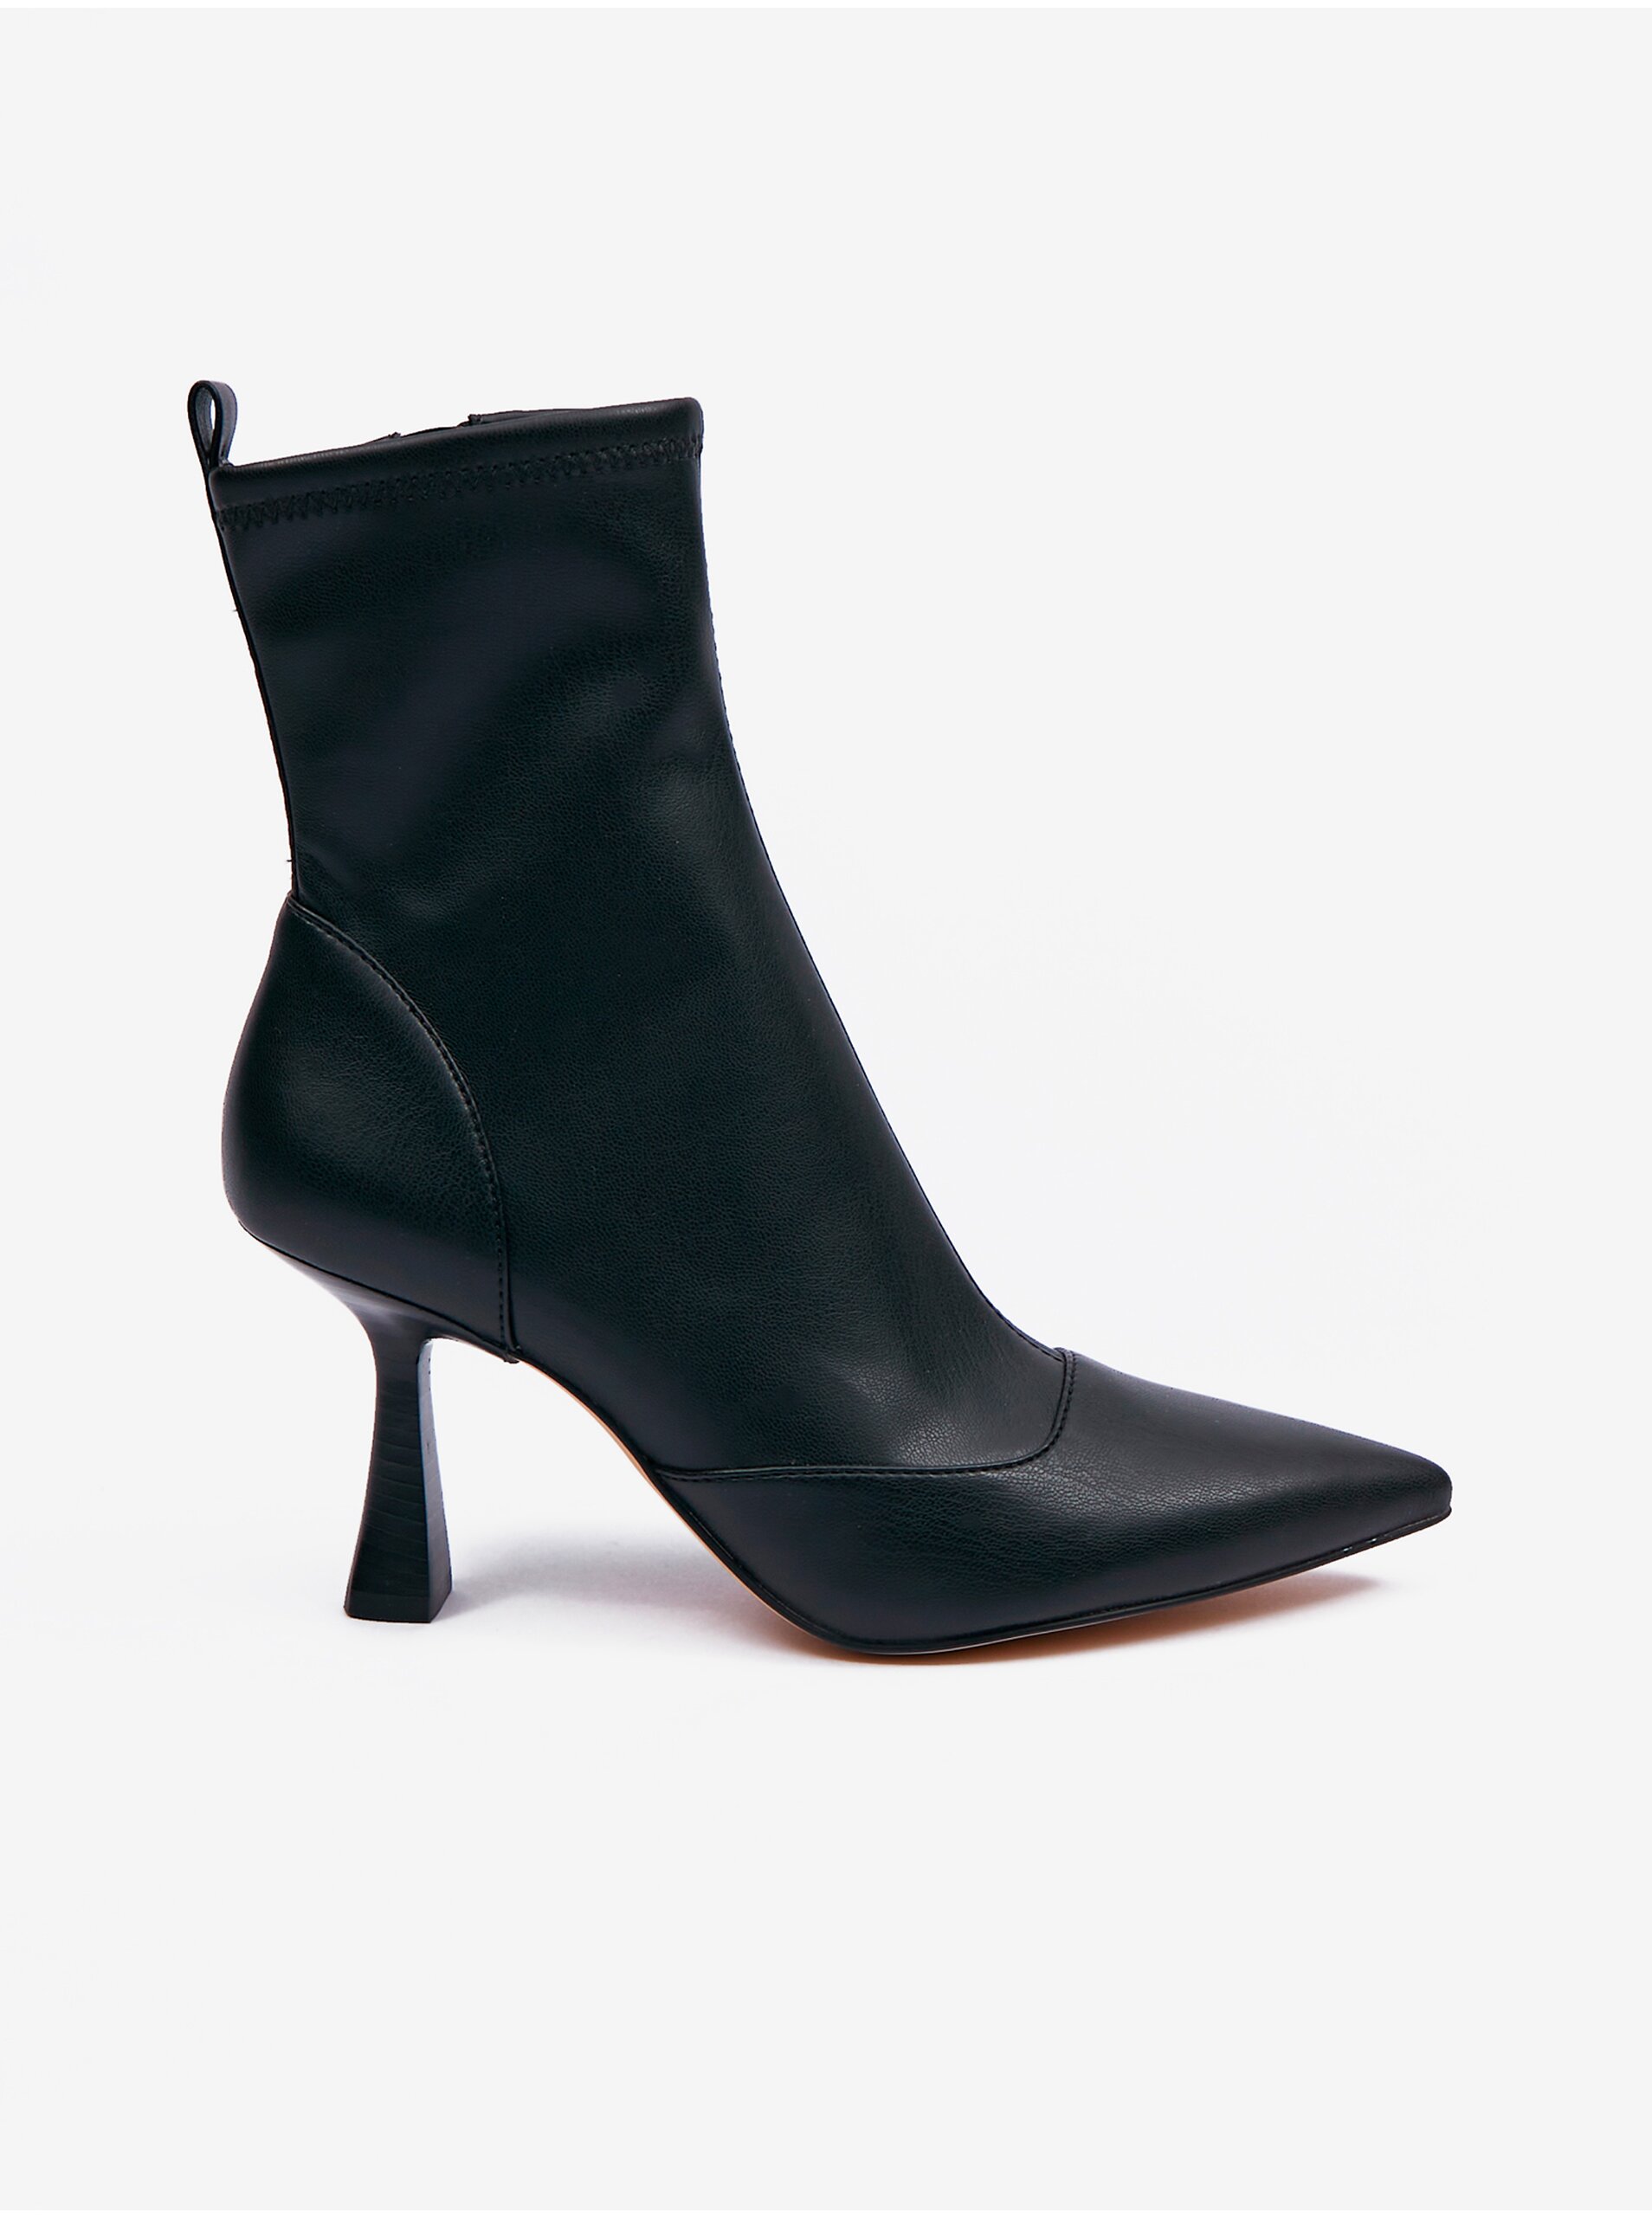 E-shop Černé dámské kotníkové boty na podpatku Michael Kors Clara